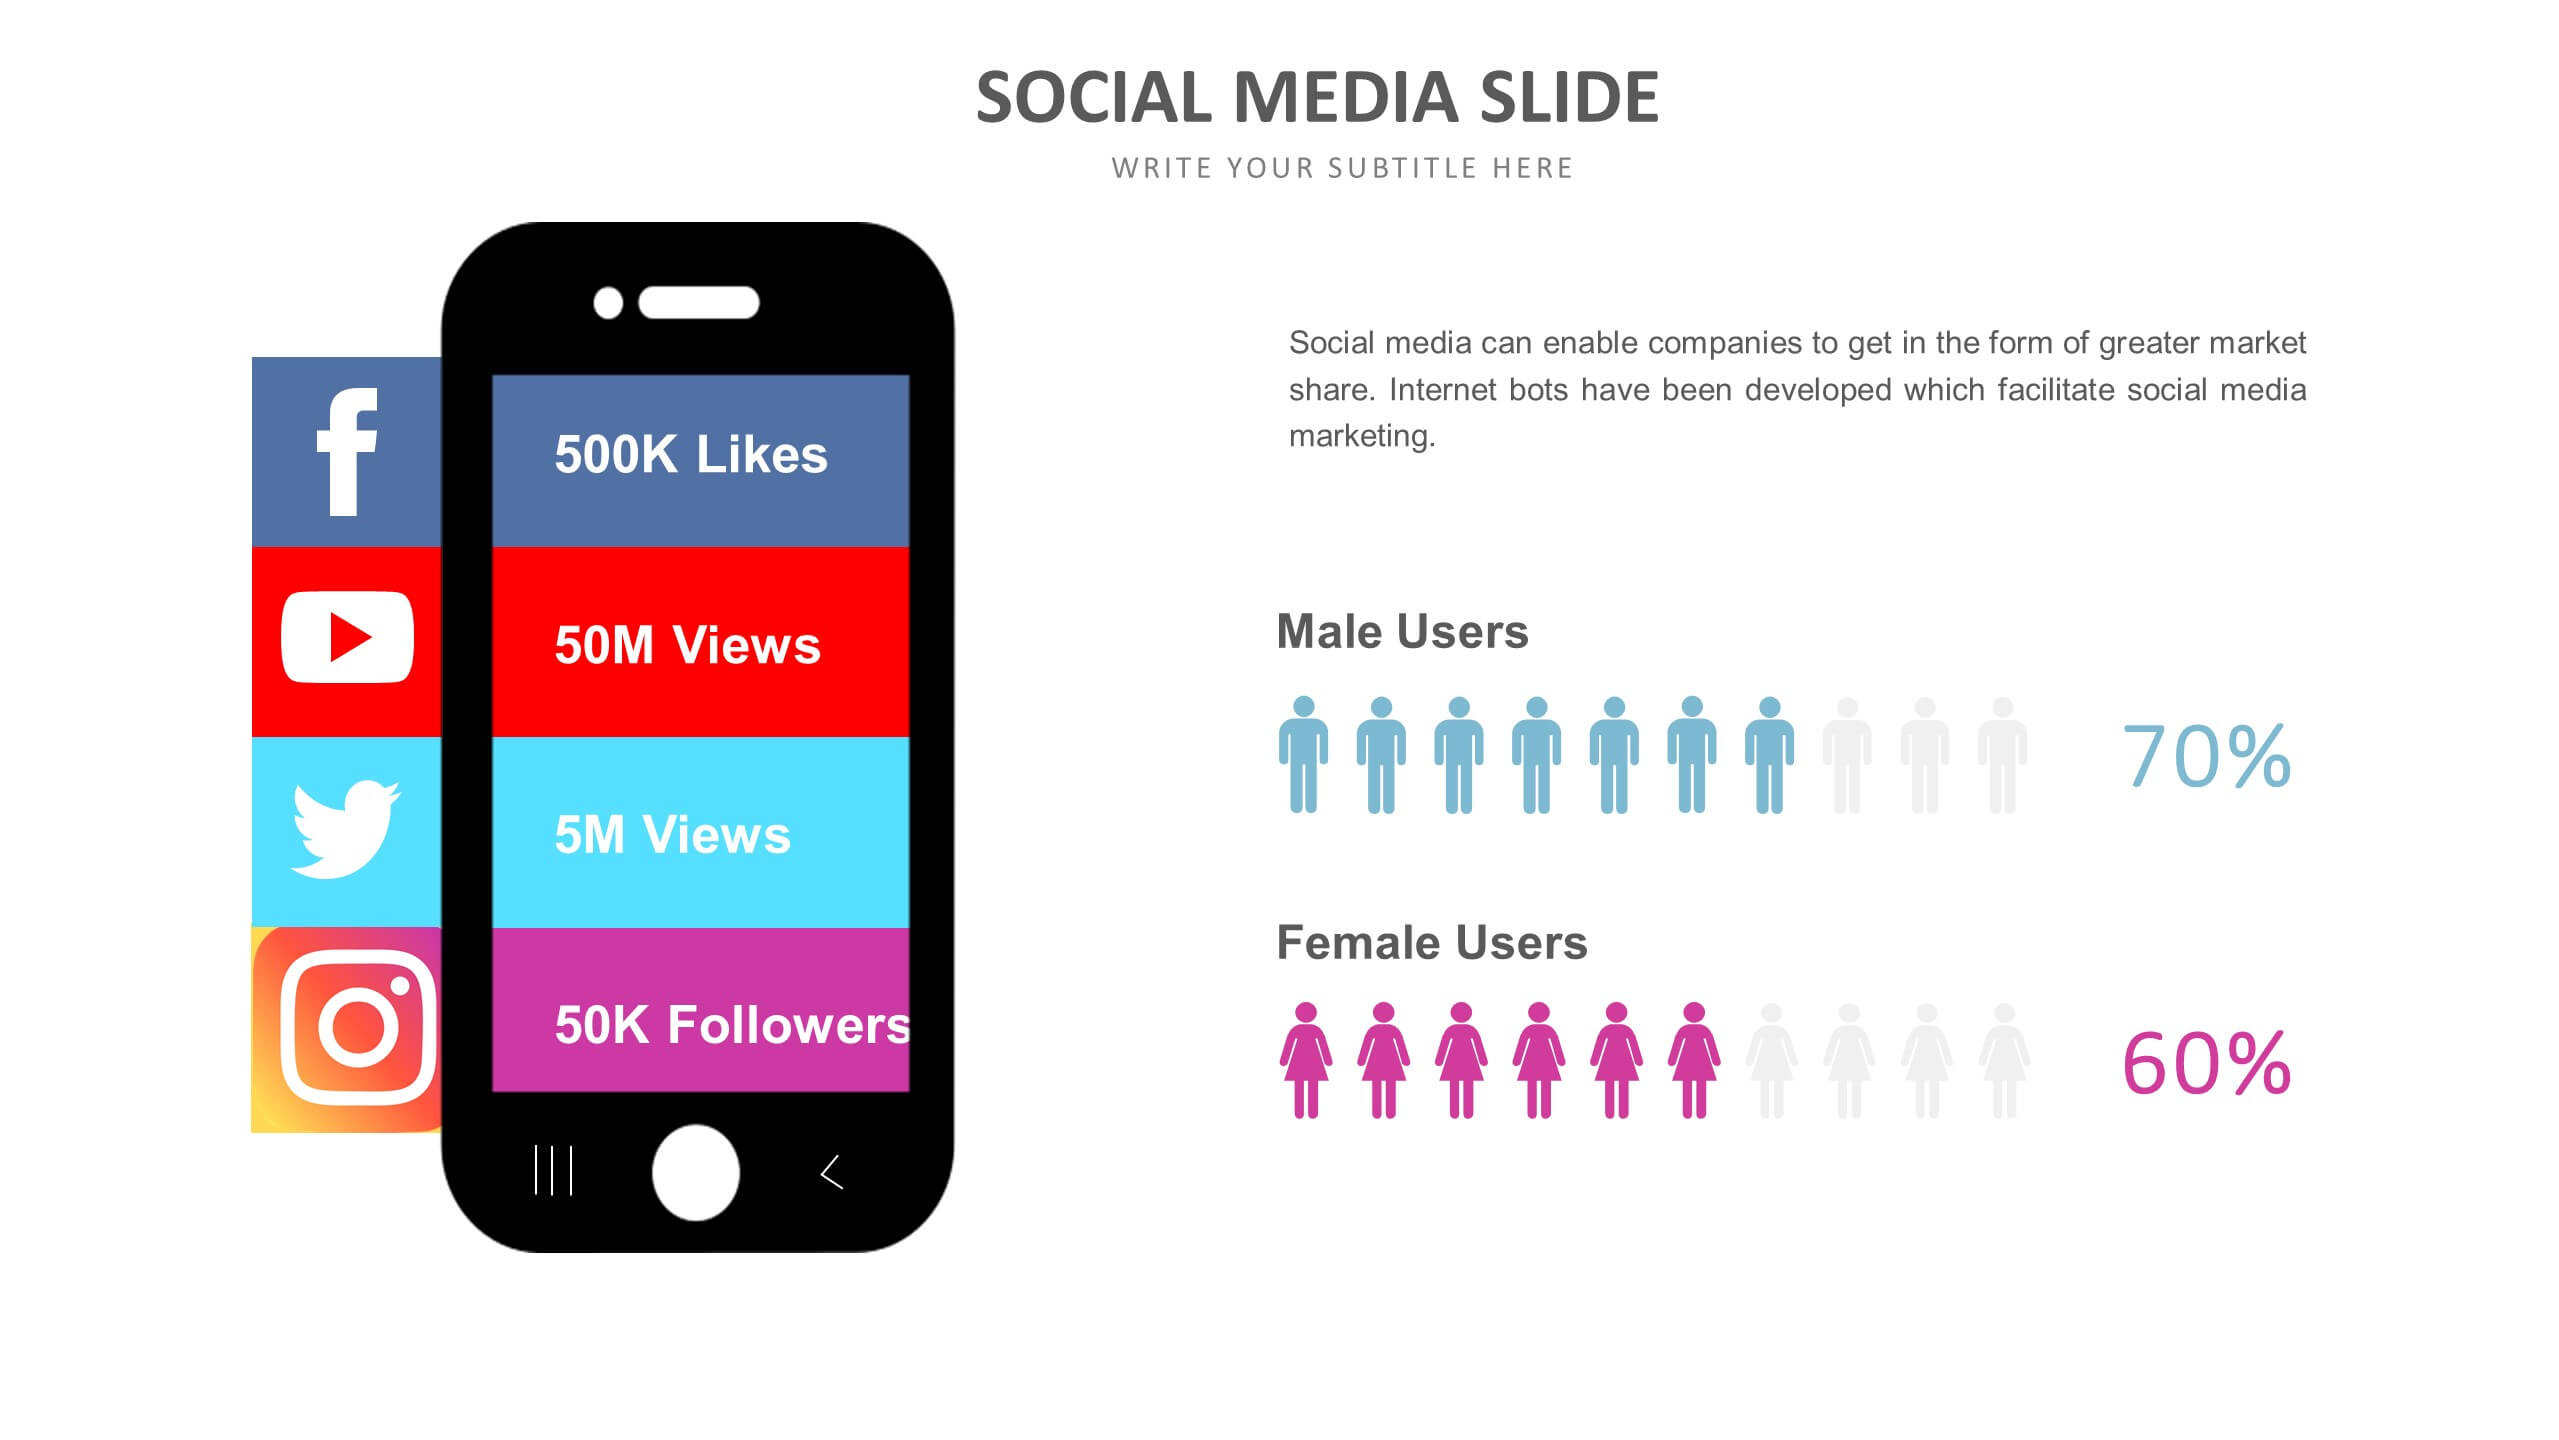 Slide Templates: Social Media Slide